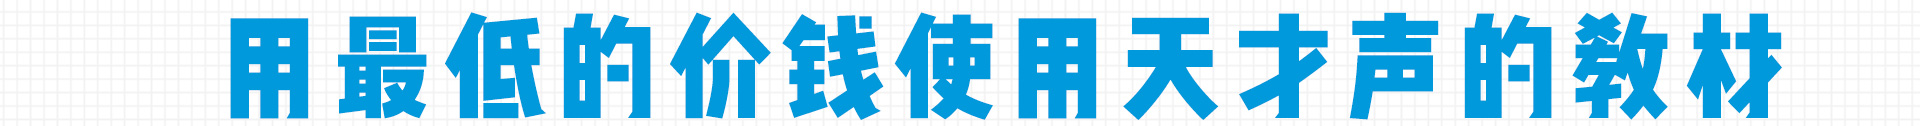 加盟网站zuizhong_60.jpg